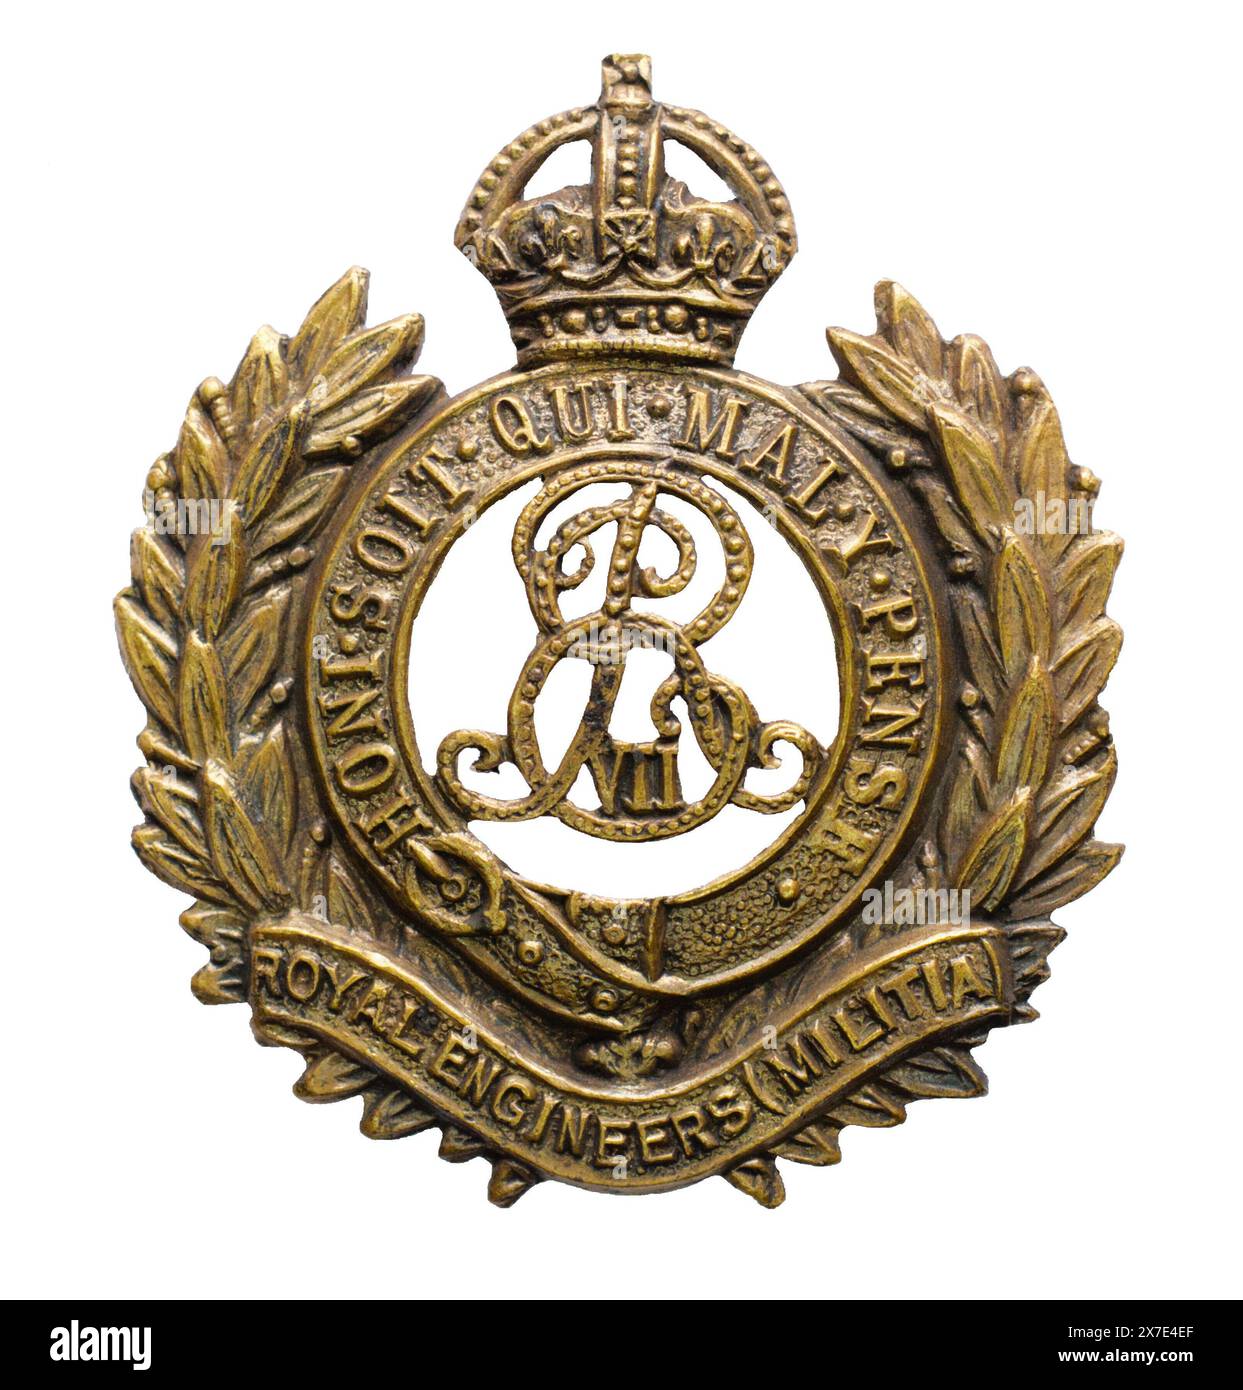 Ein Kappenabzeichen der Royal Engineers Militia um 1901 - 1910. Stockfoto